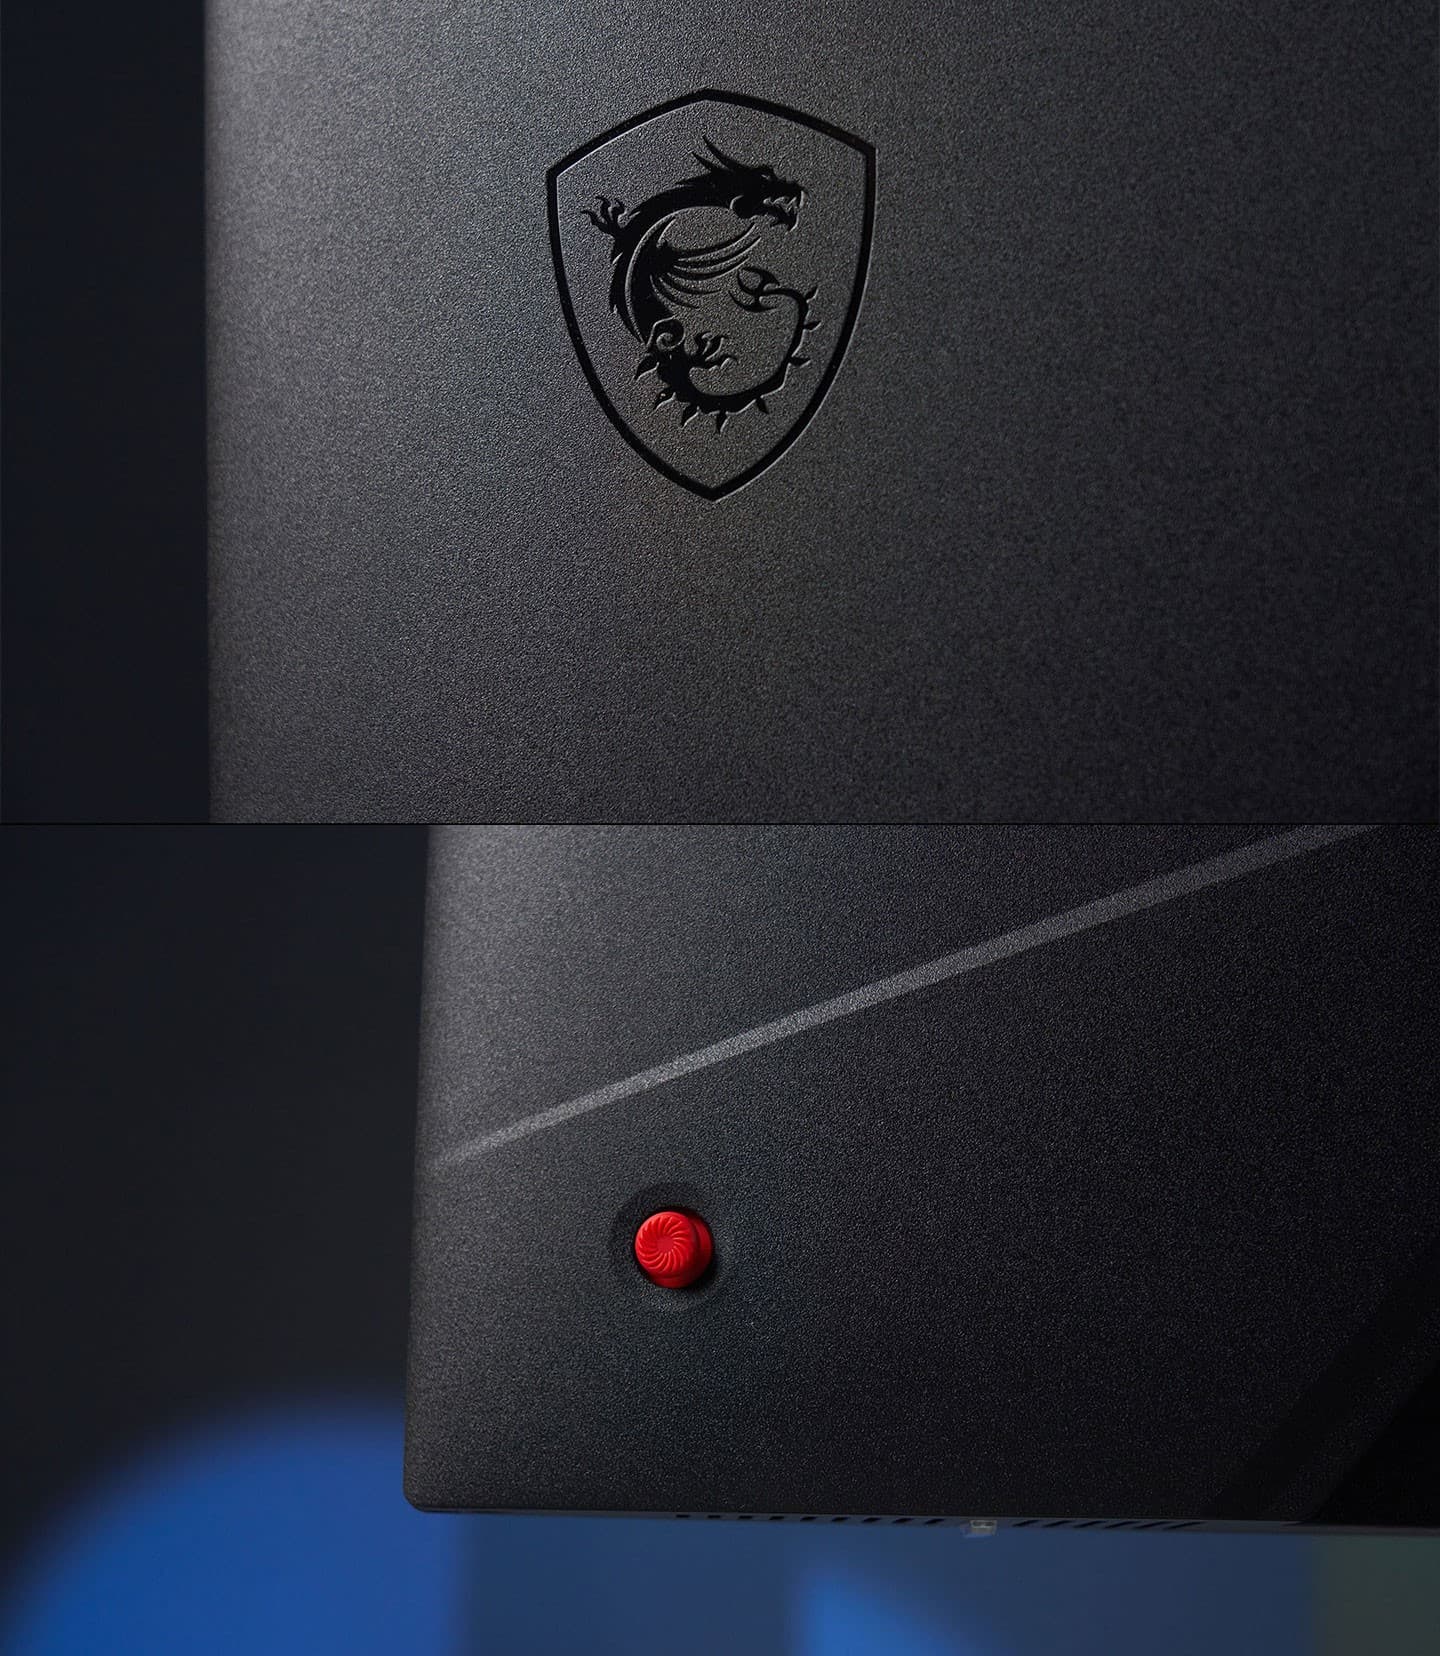 機身背面的龍魂盾徽由黑色亮面線條所構成，OSD 鍵仍採用鮮艷的紅色。